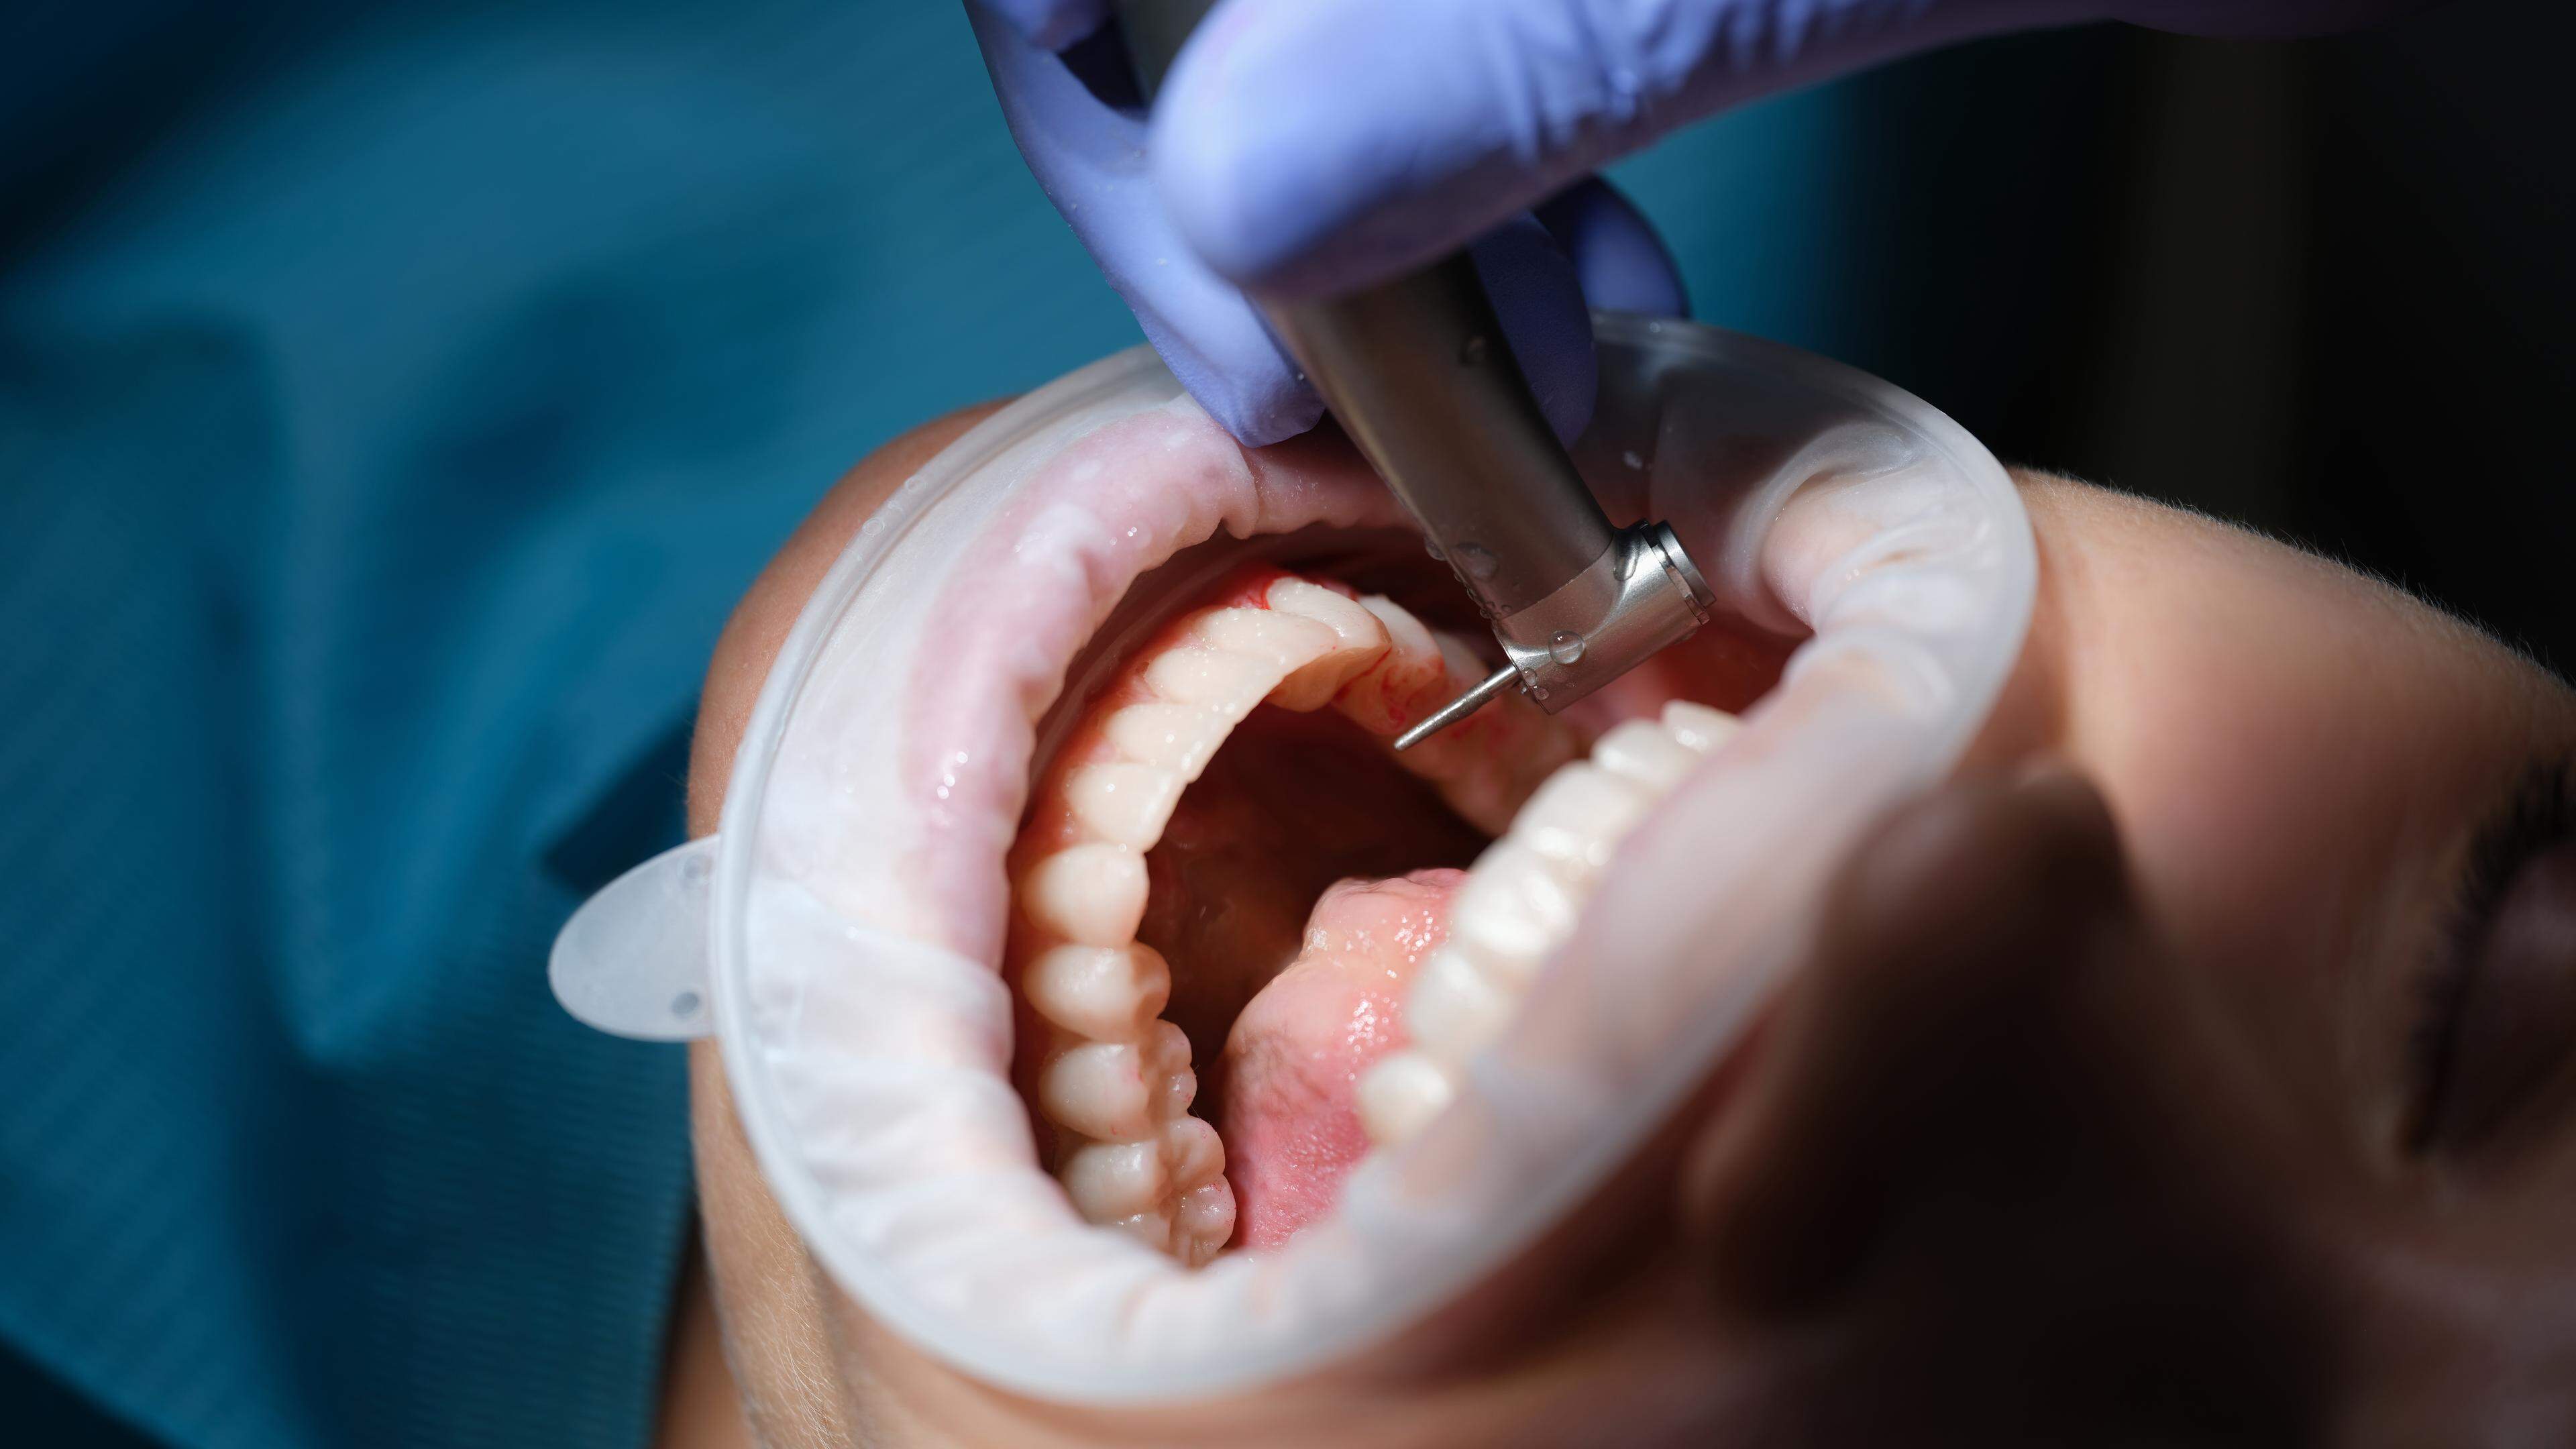 Einem Zahnarzt werden Behandlungsfehler und mangelnde Hygiene vorgeworfen.